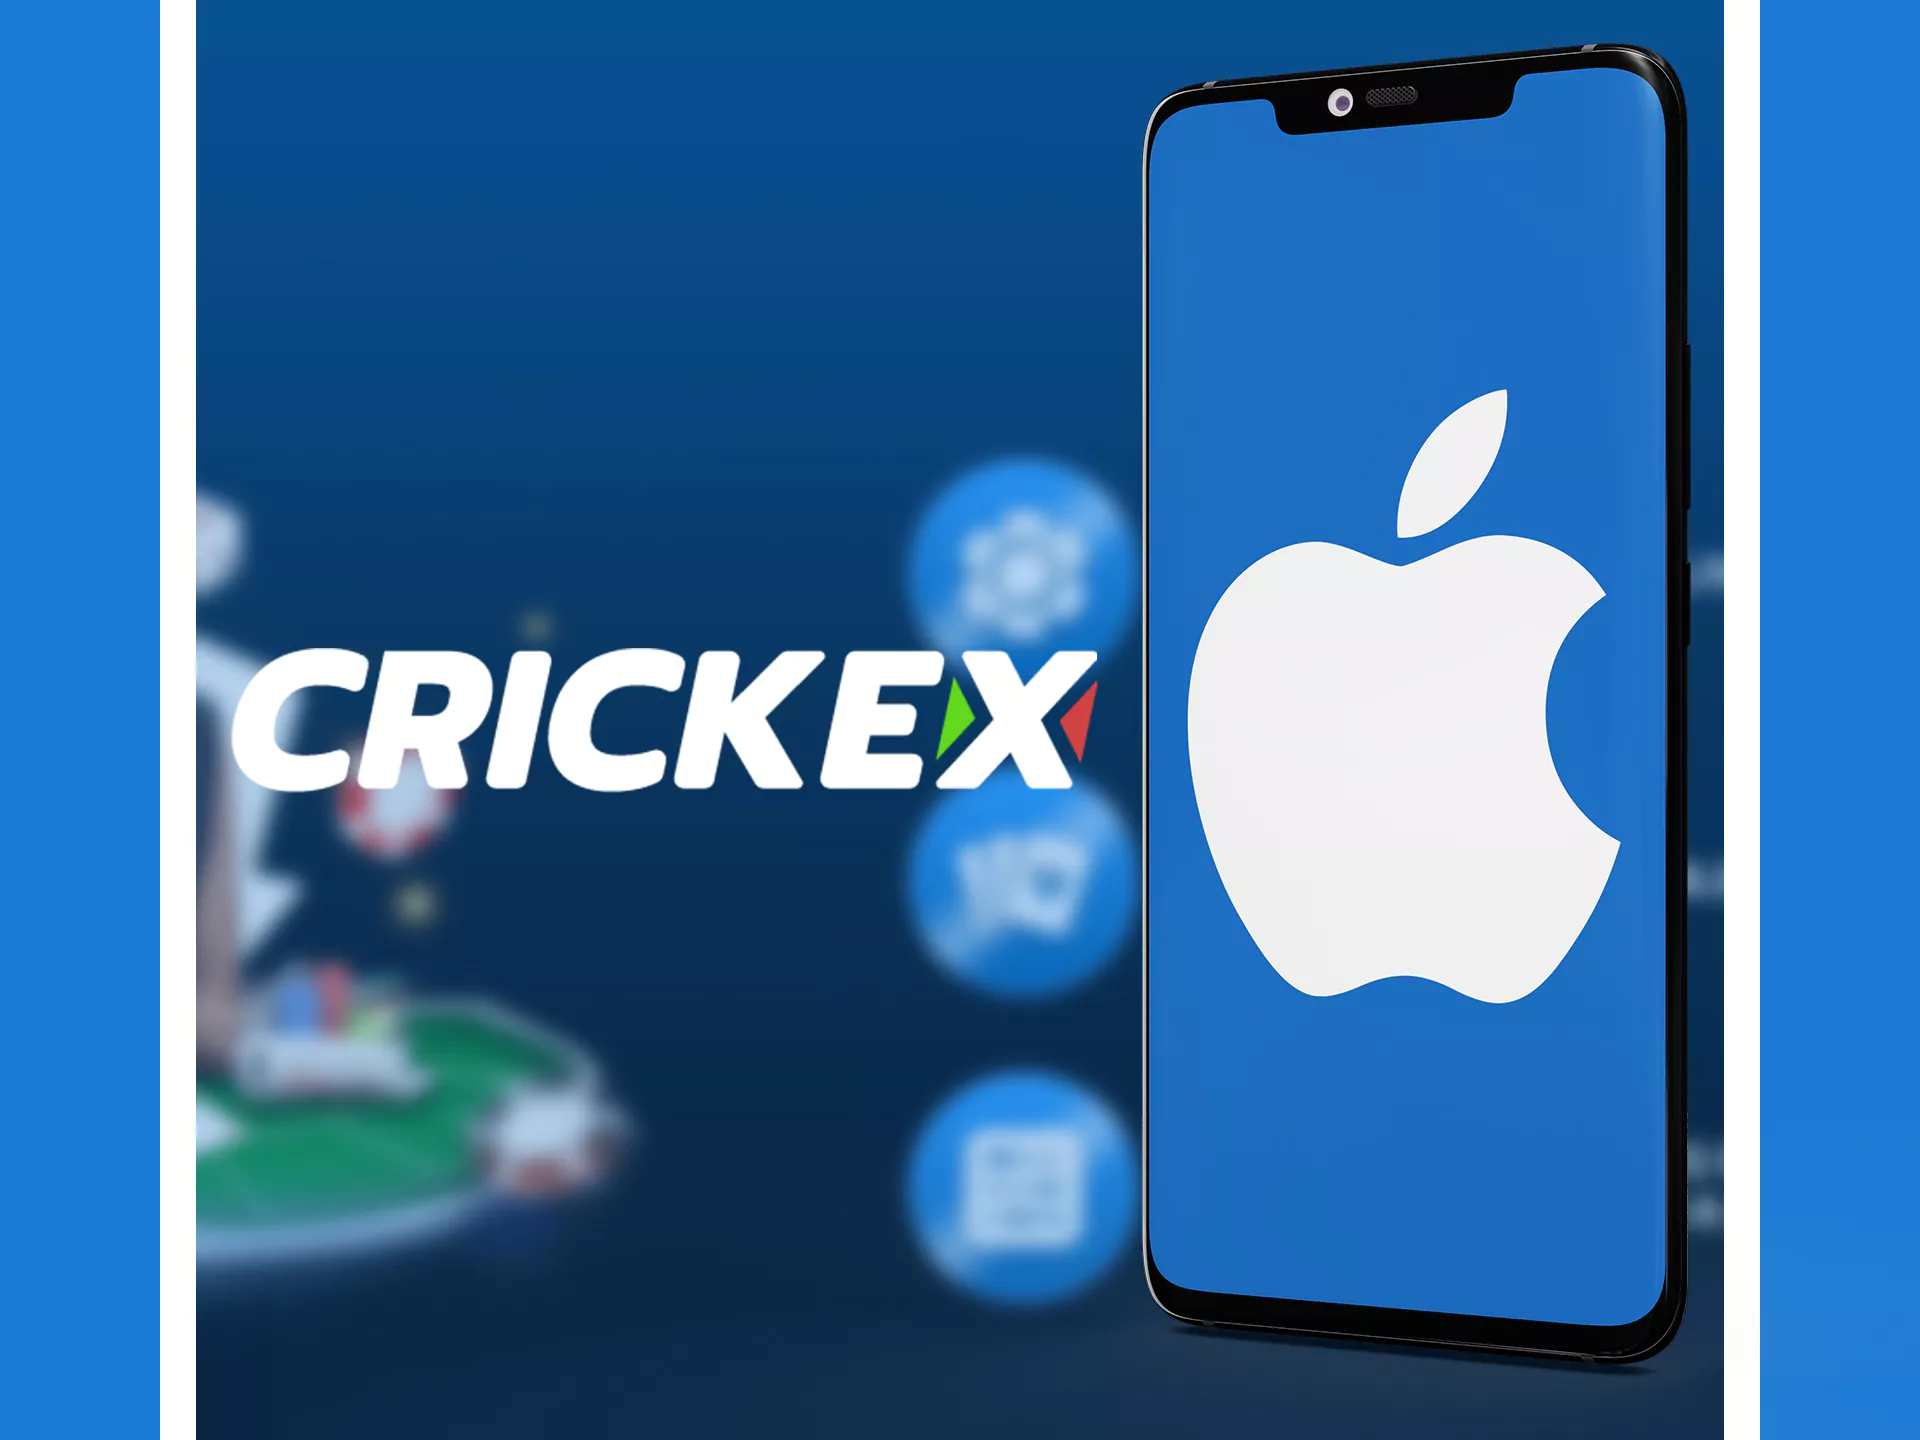 iOS डिवाइस Crickex साइट के मोबाइल संस्करण का समर्थन करते हैं।